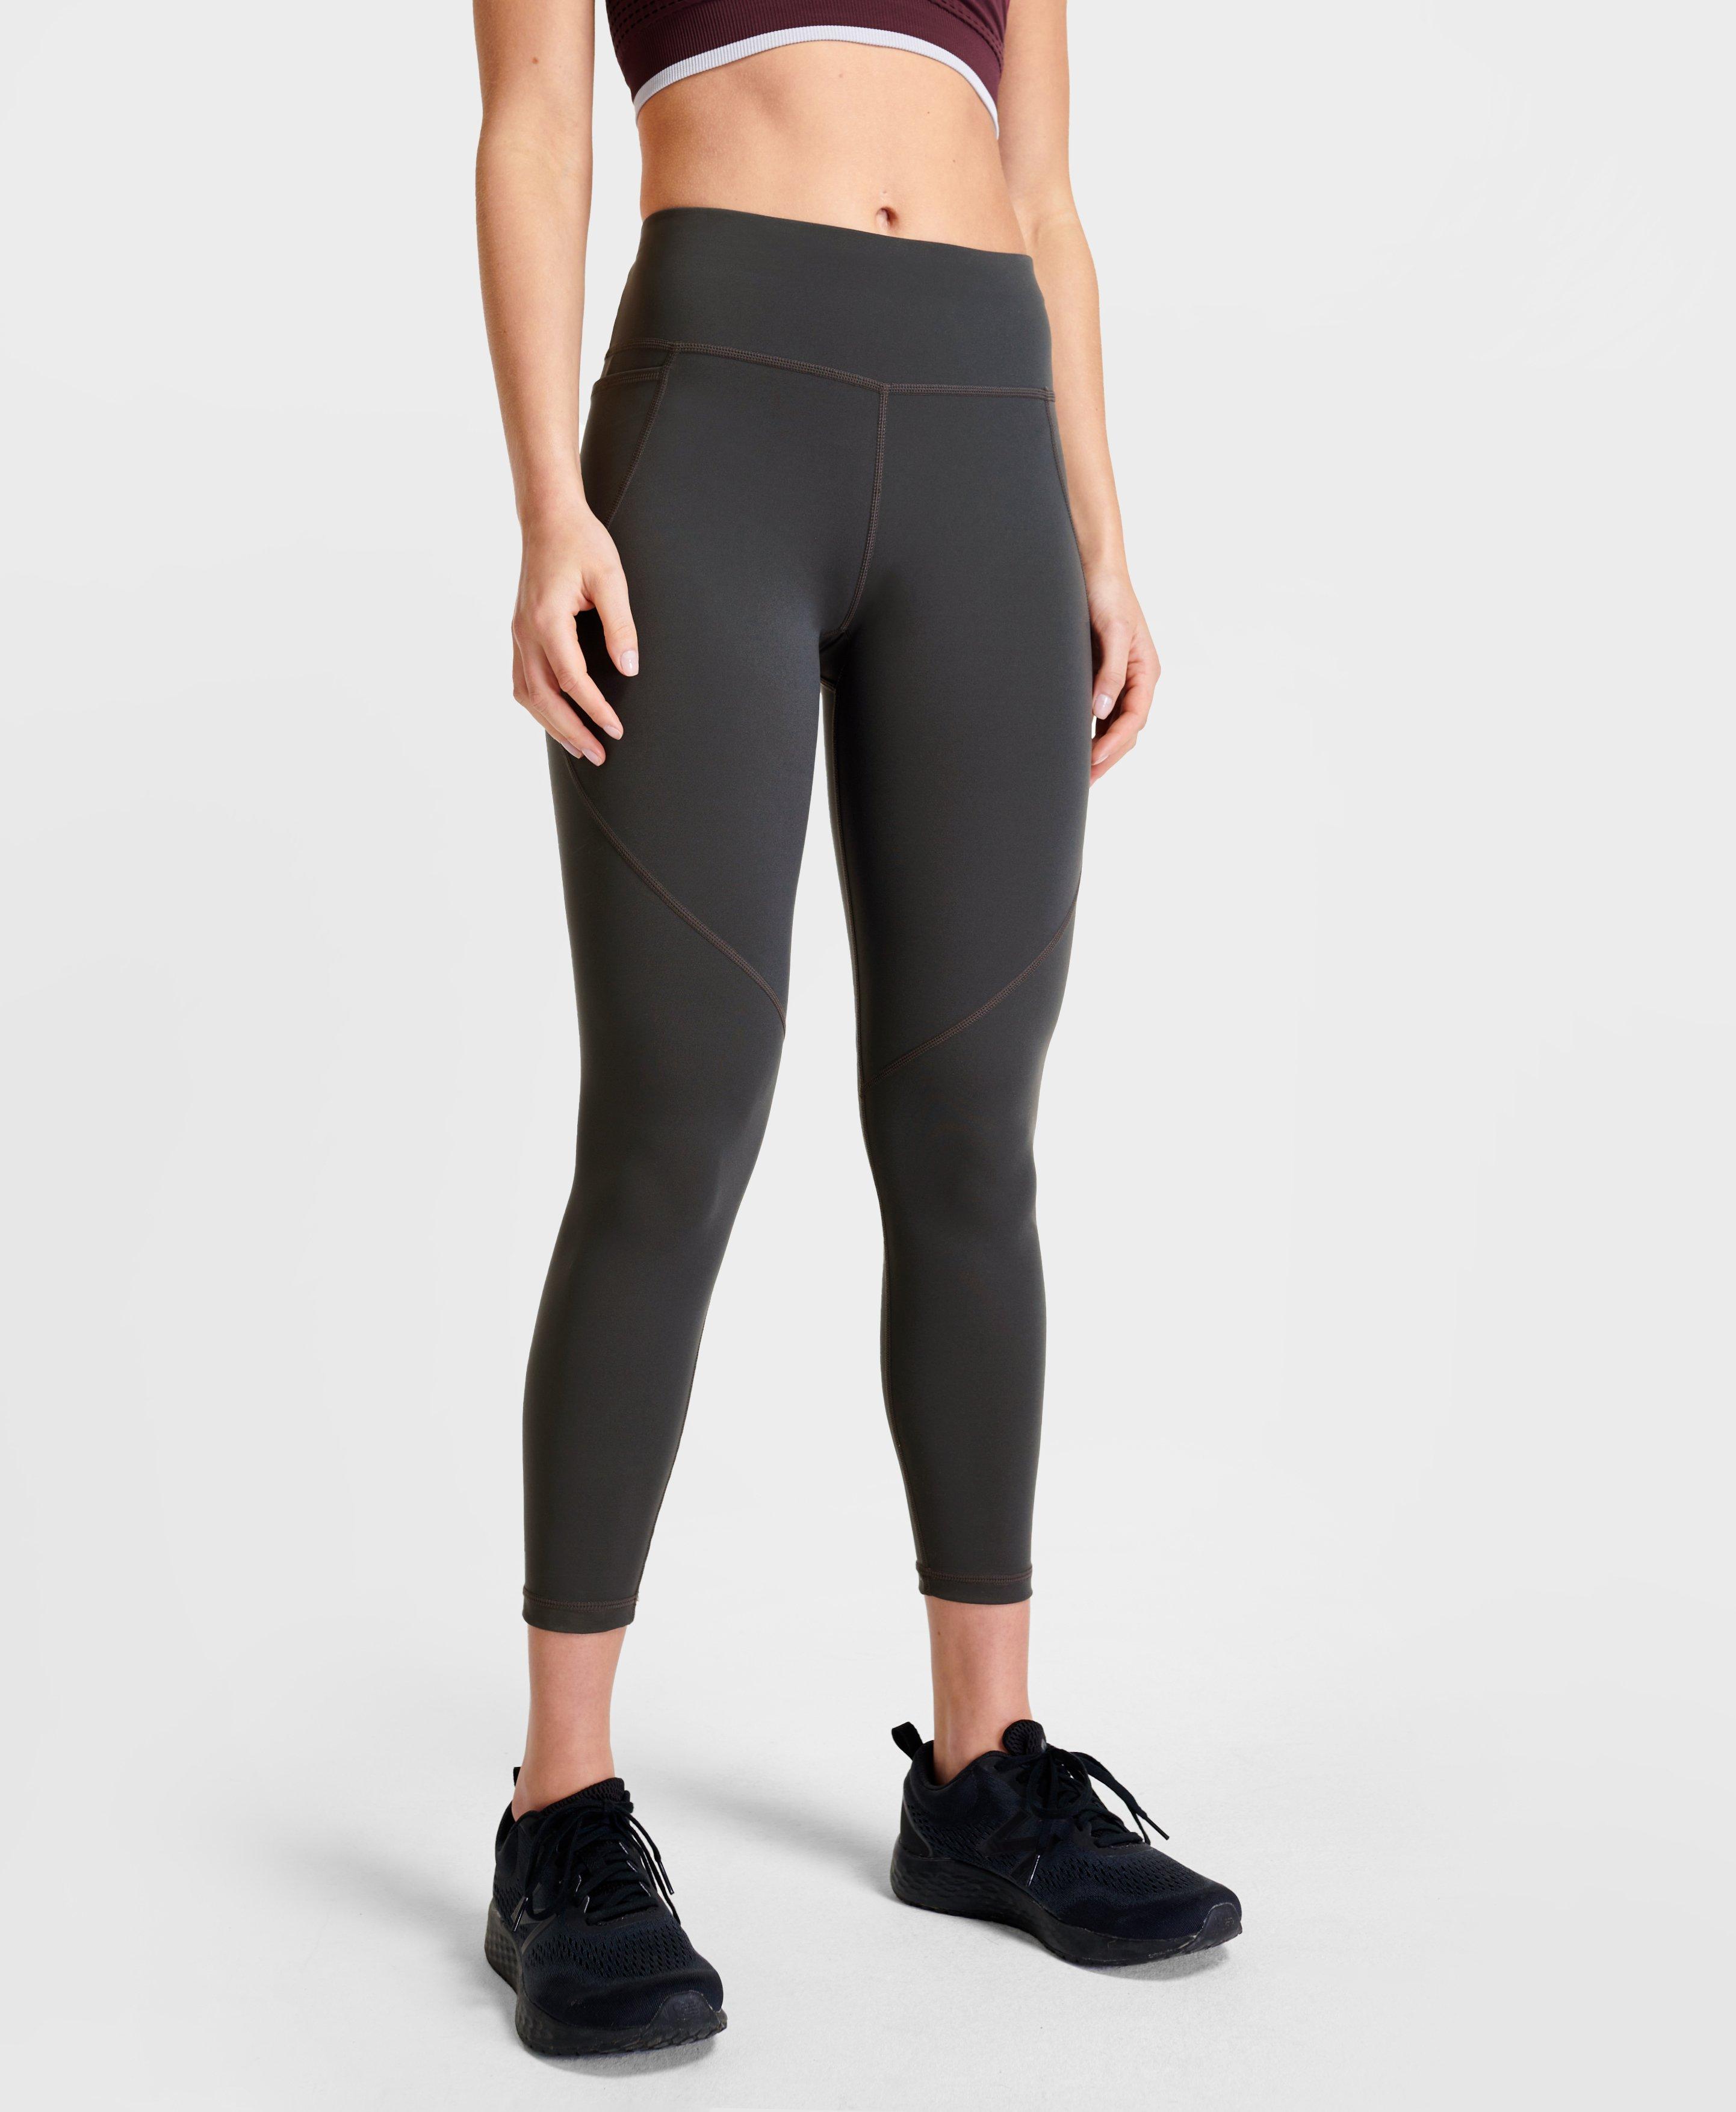 Grey Workout Legging – blackowhitecore